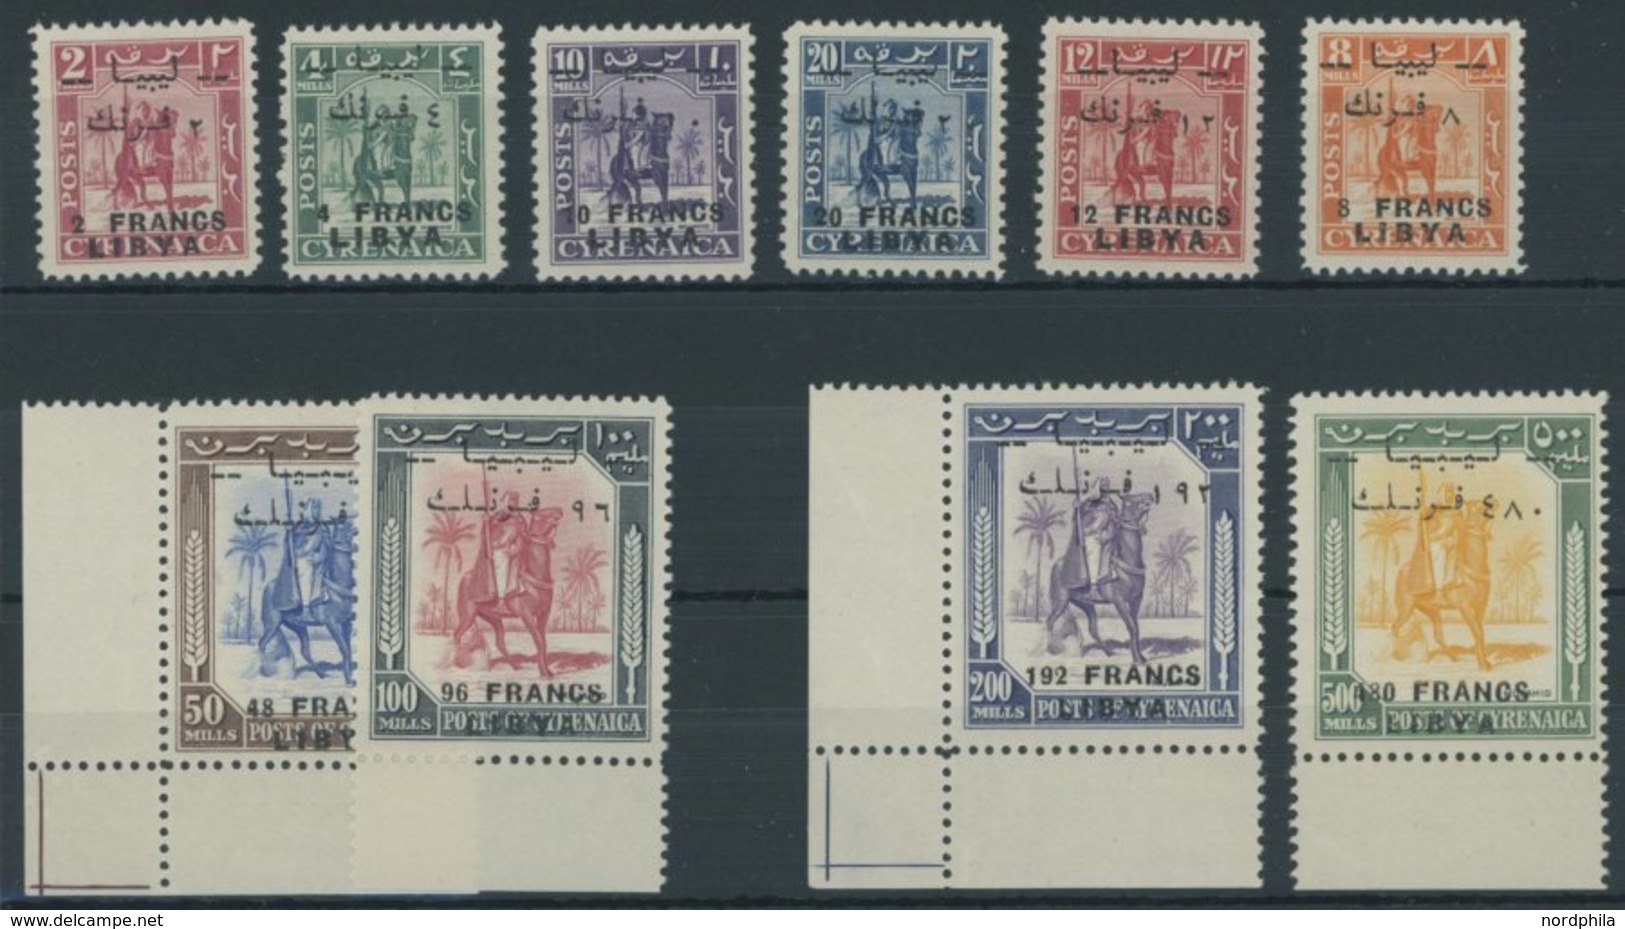 LIBYEN 14-23 **, 1951, Senussi-Kampfreiter, Aufdruck Auch In Französischer Währung, Postfrischer Prachtsatz, Signiert Zu - Libya